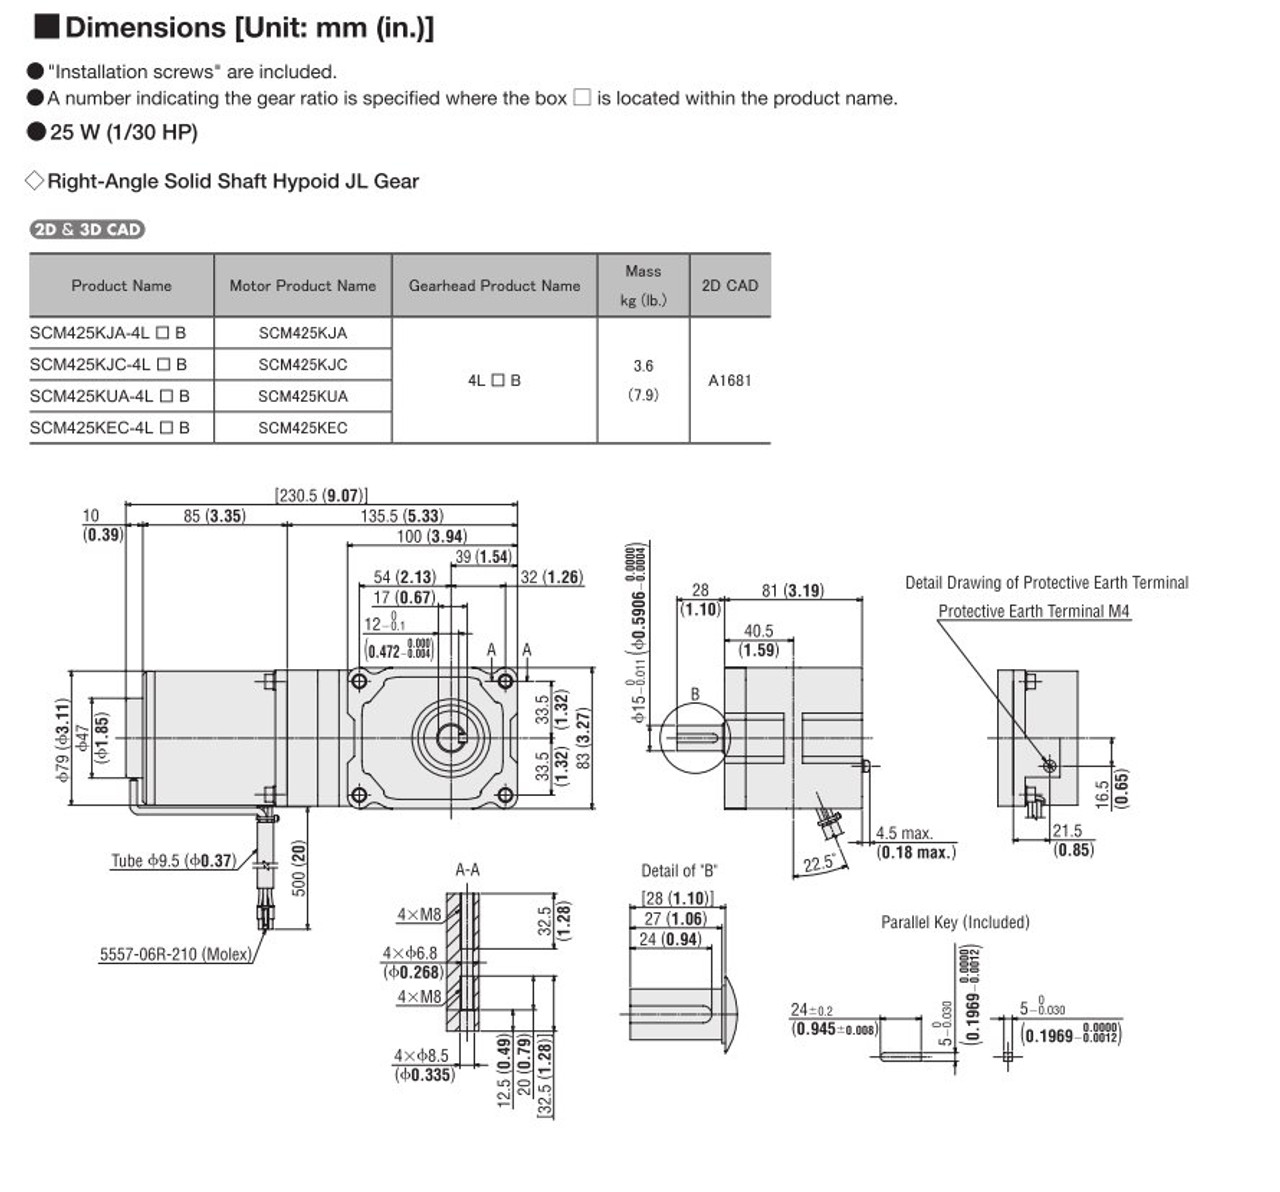 SCM425KEC-4L10B - Dimensions